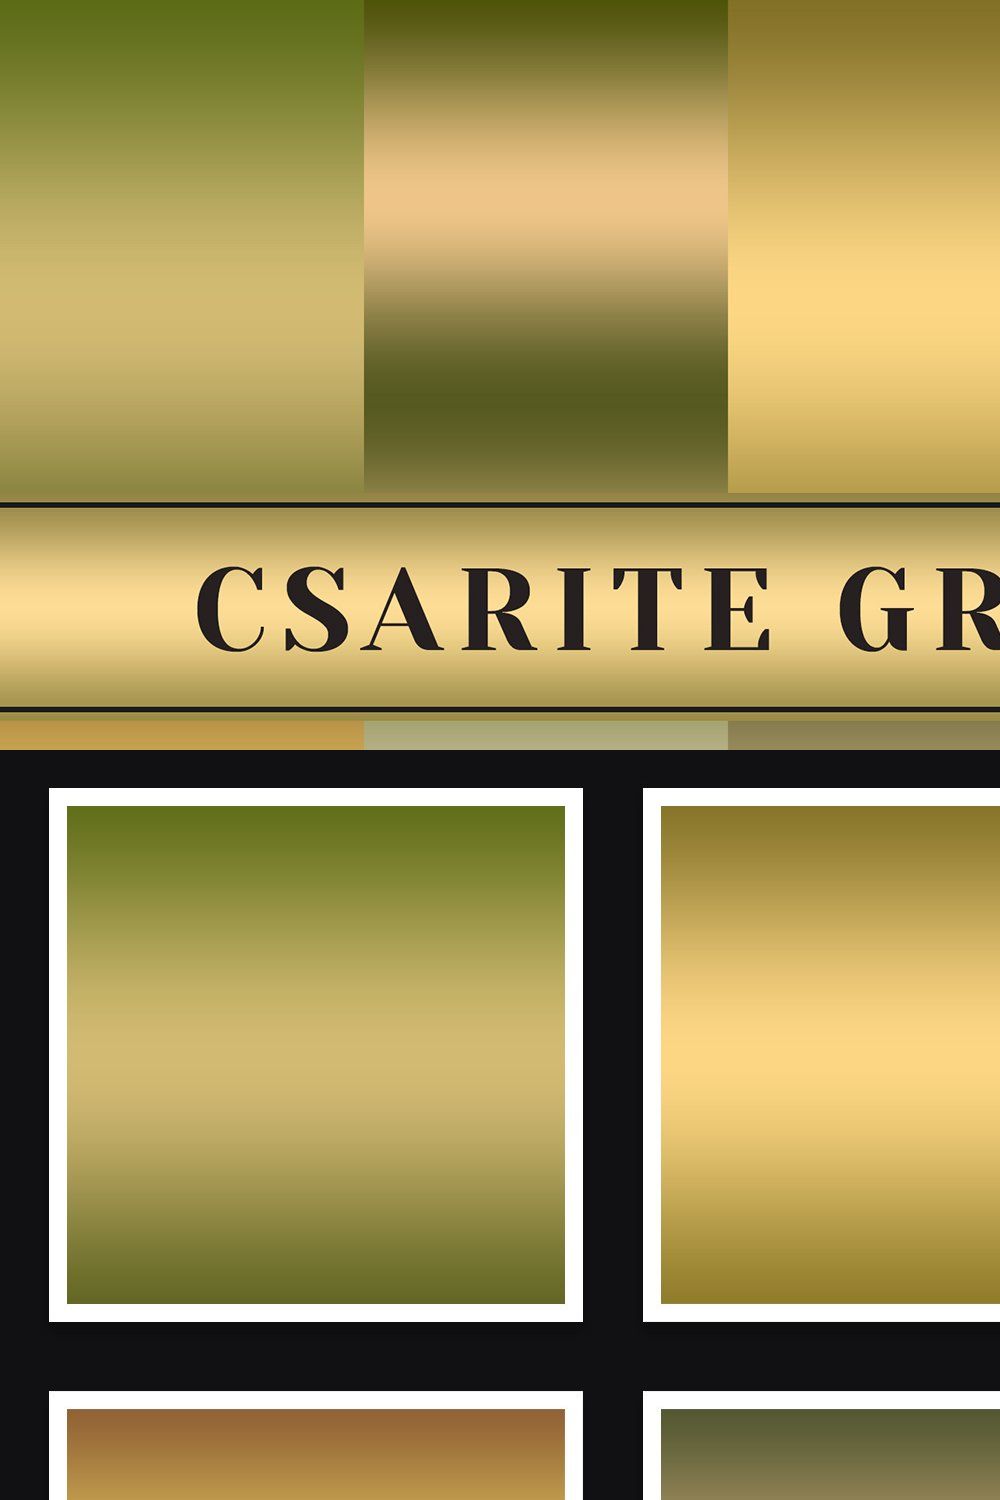 Csarite Gradients pinterest preview image.